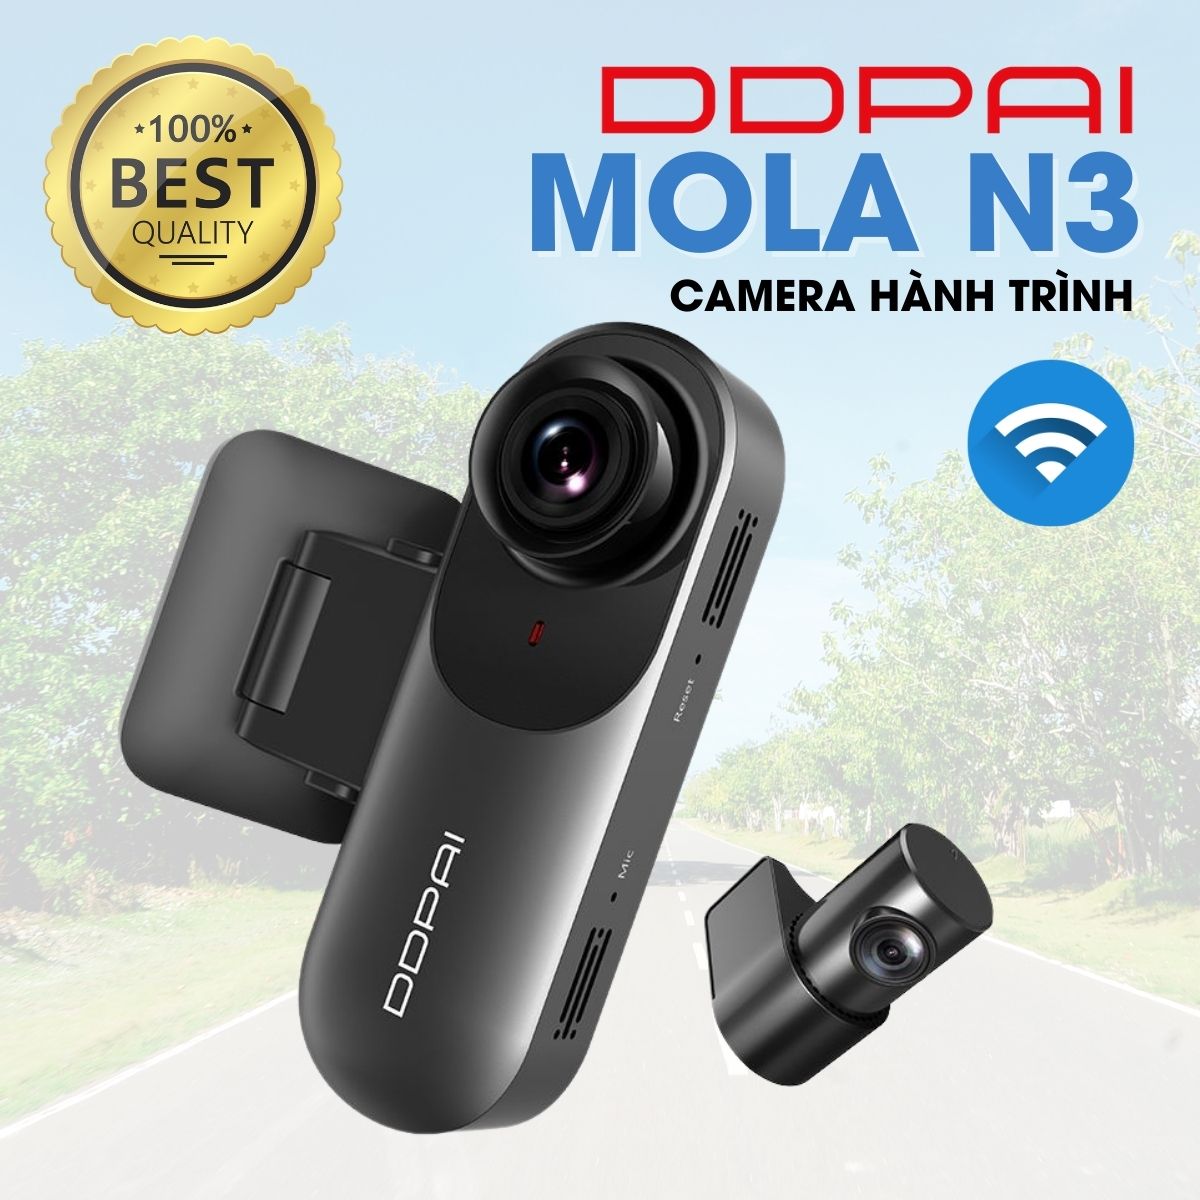 Camera hành trình DDPai Mola N3 1600P 5MP, kết nối wifi thông minh, giám sát đỗ xe 24h